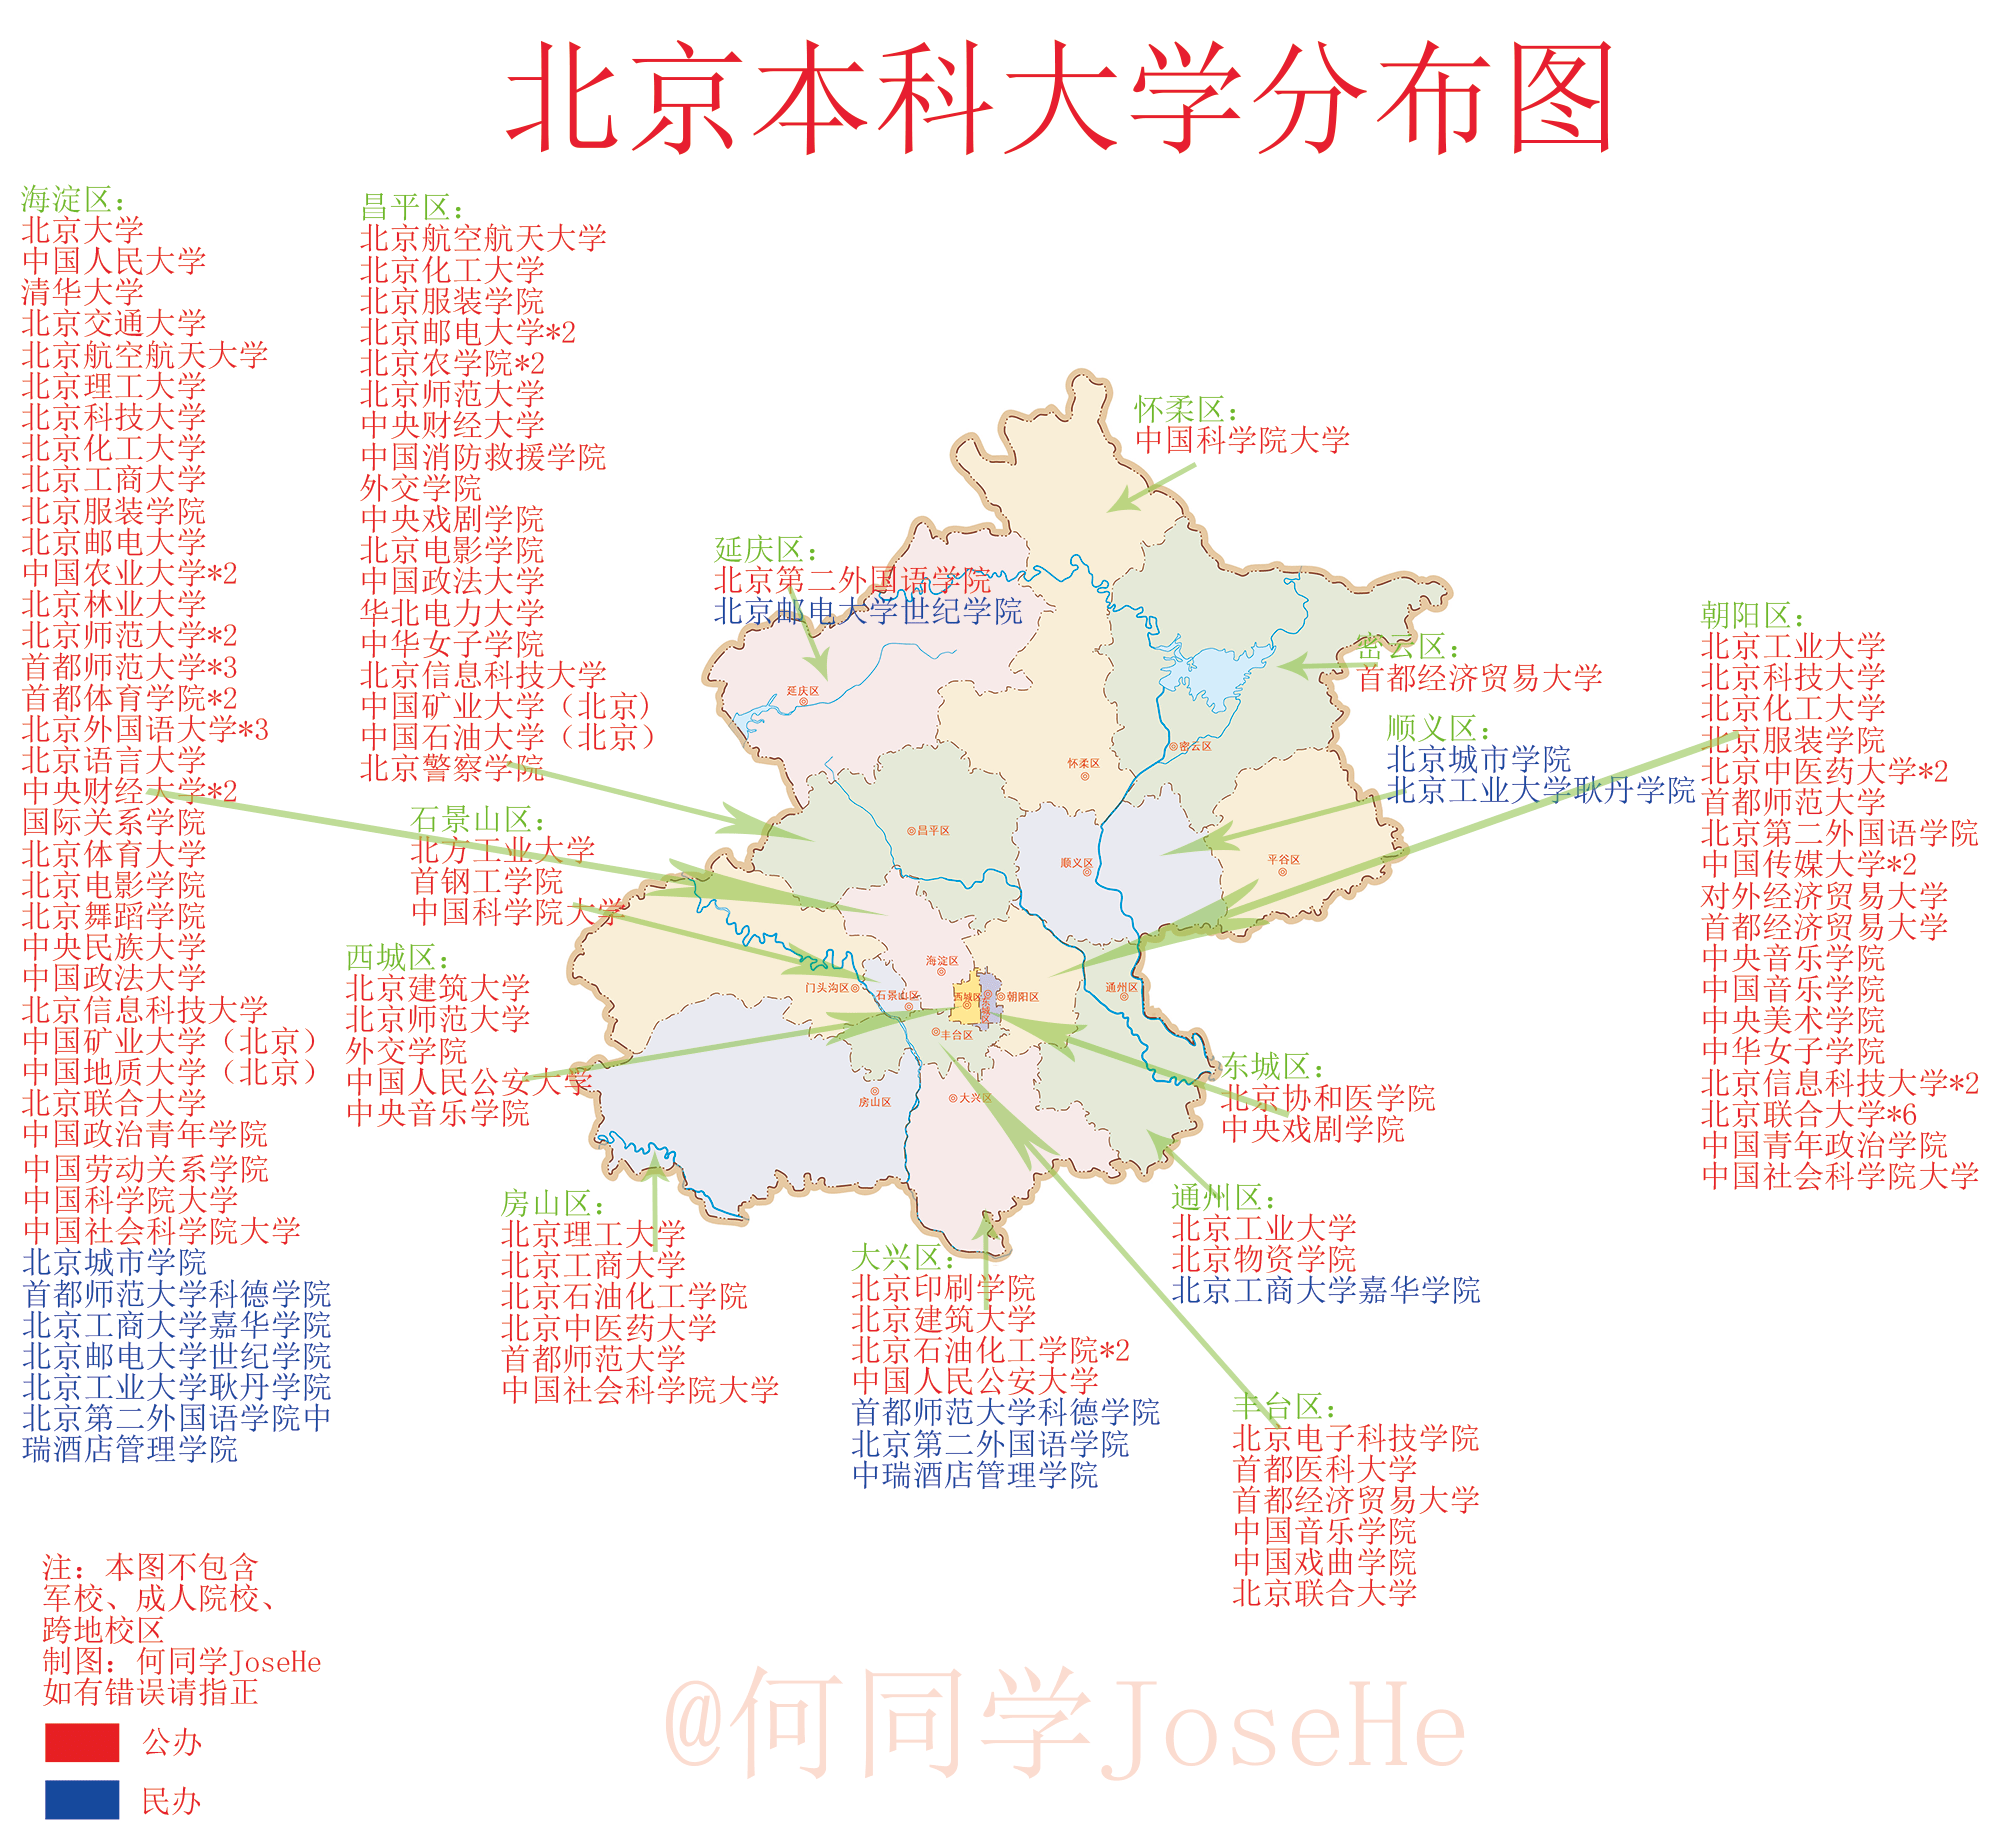 2张图看懂北京本科大学名单和分布图